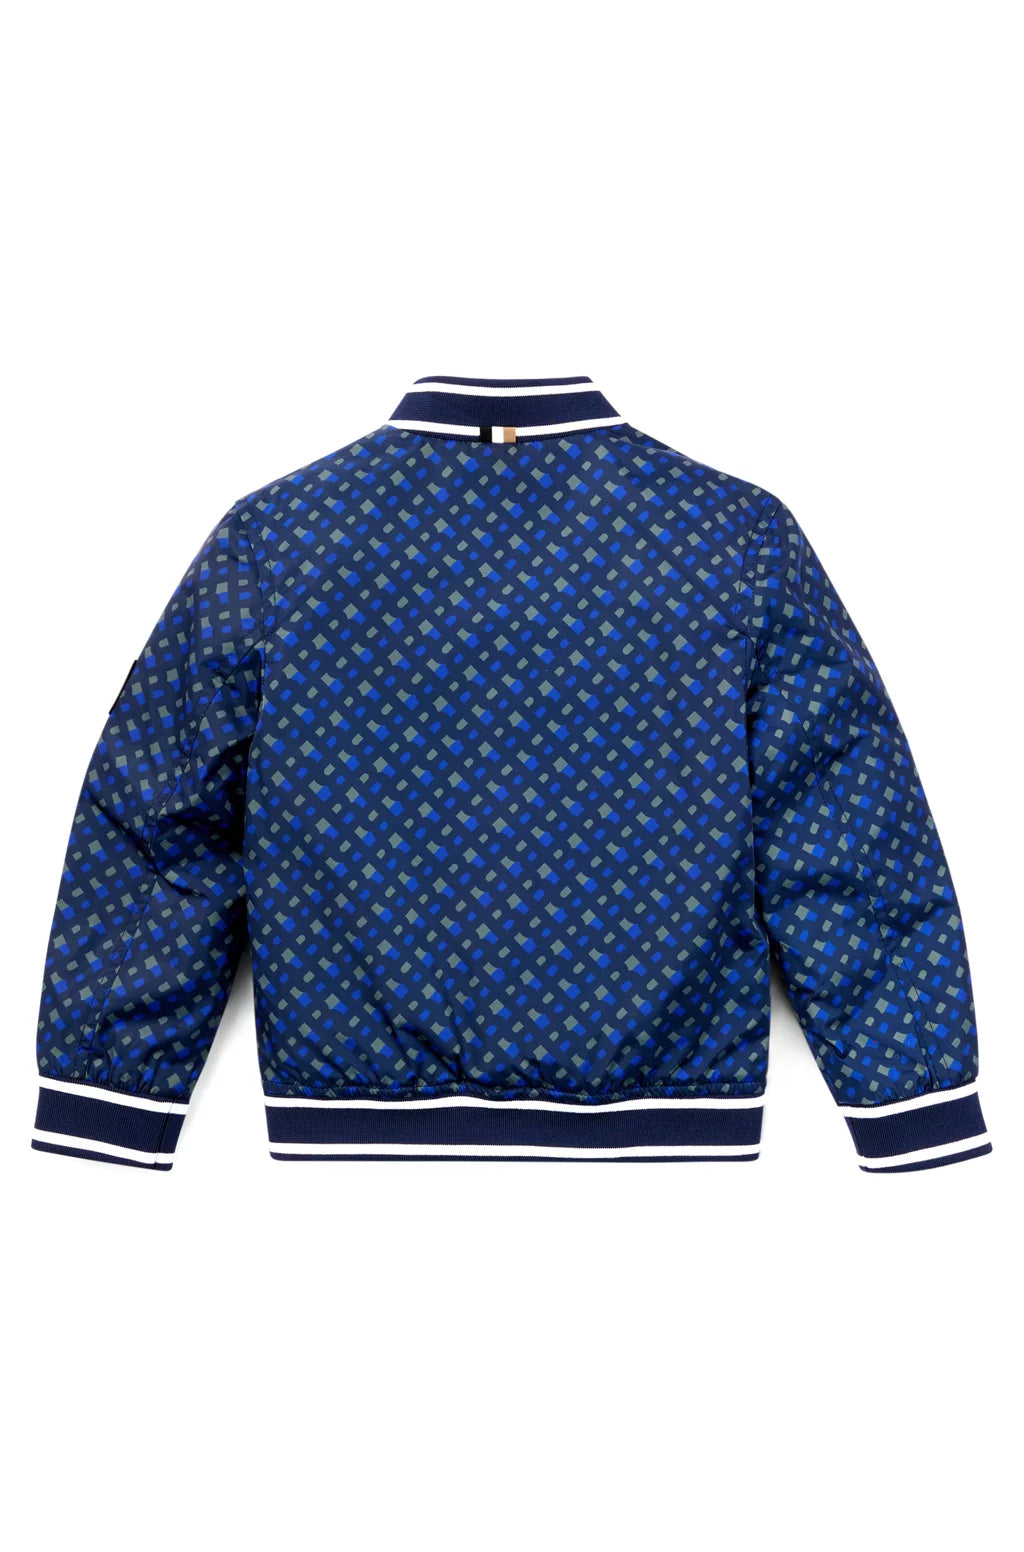 Xhakete blu me logo\kids bomber jacket-boss